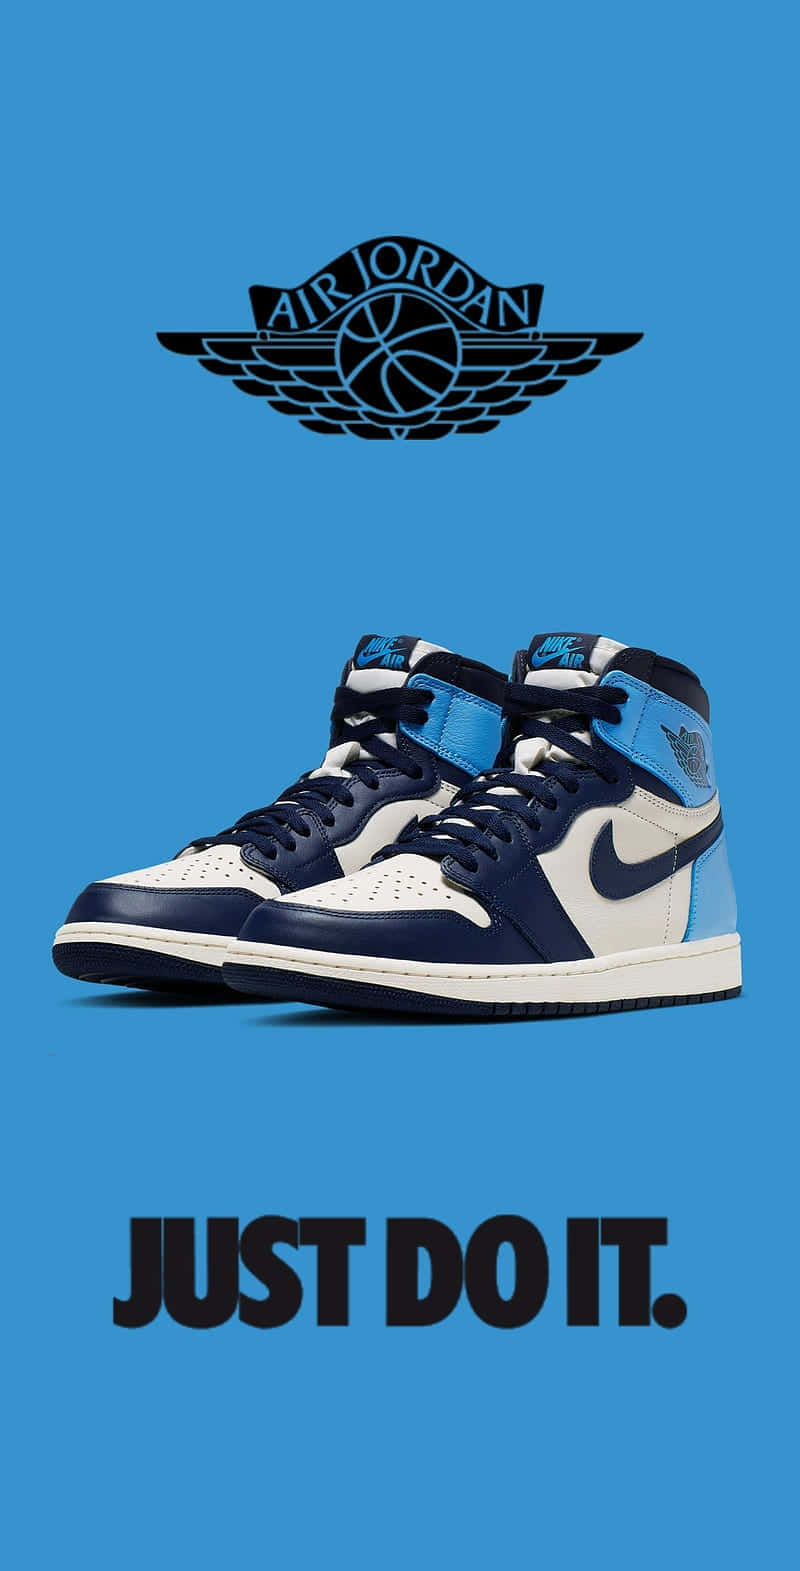 Air Jordan Blue Sneakers Advert Wallpaper